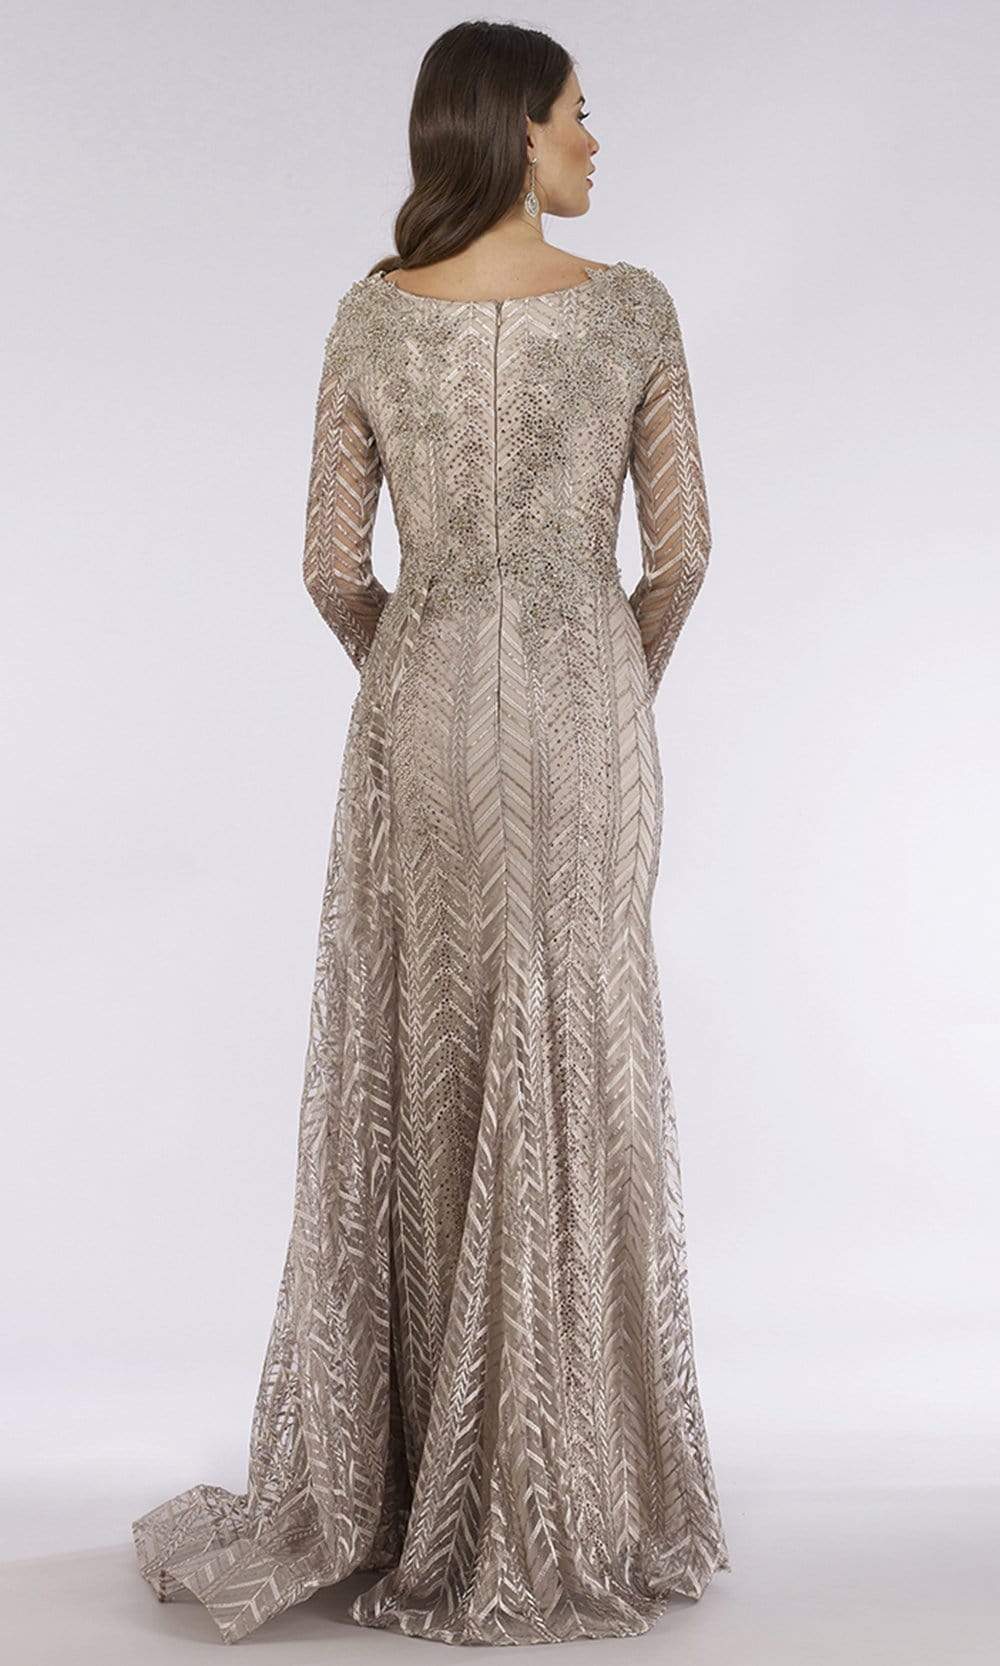 Lara Dresses - 29620 Trimmed V Neck Long Sleeve Adorned Evening Gown Mother of the Bride Dresses